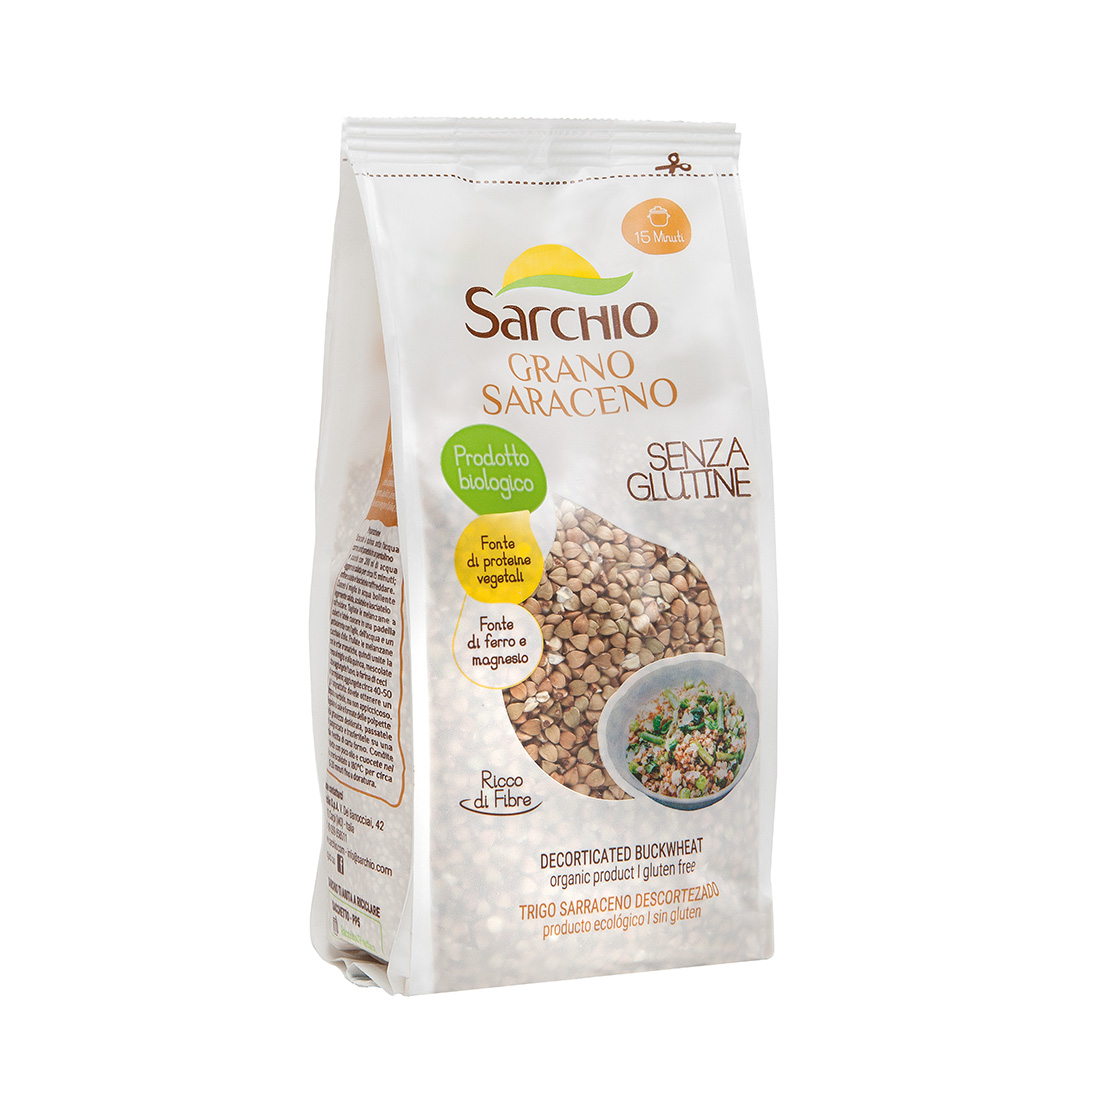 Prodotti Biologici, Riso e cereali, Grano Saraceno